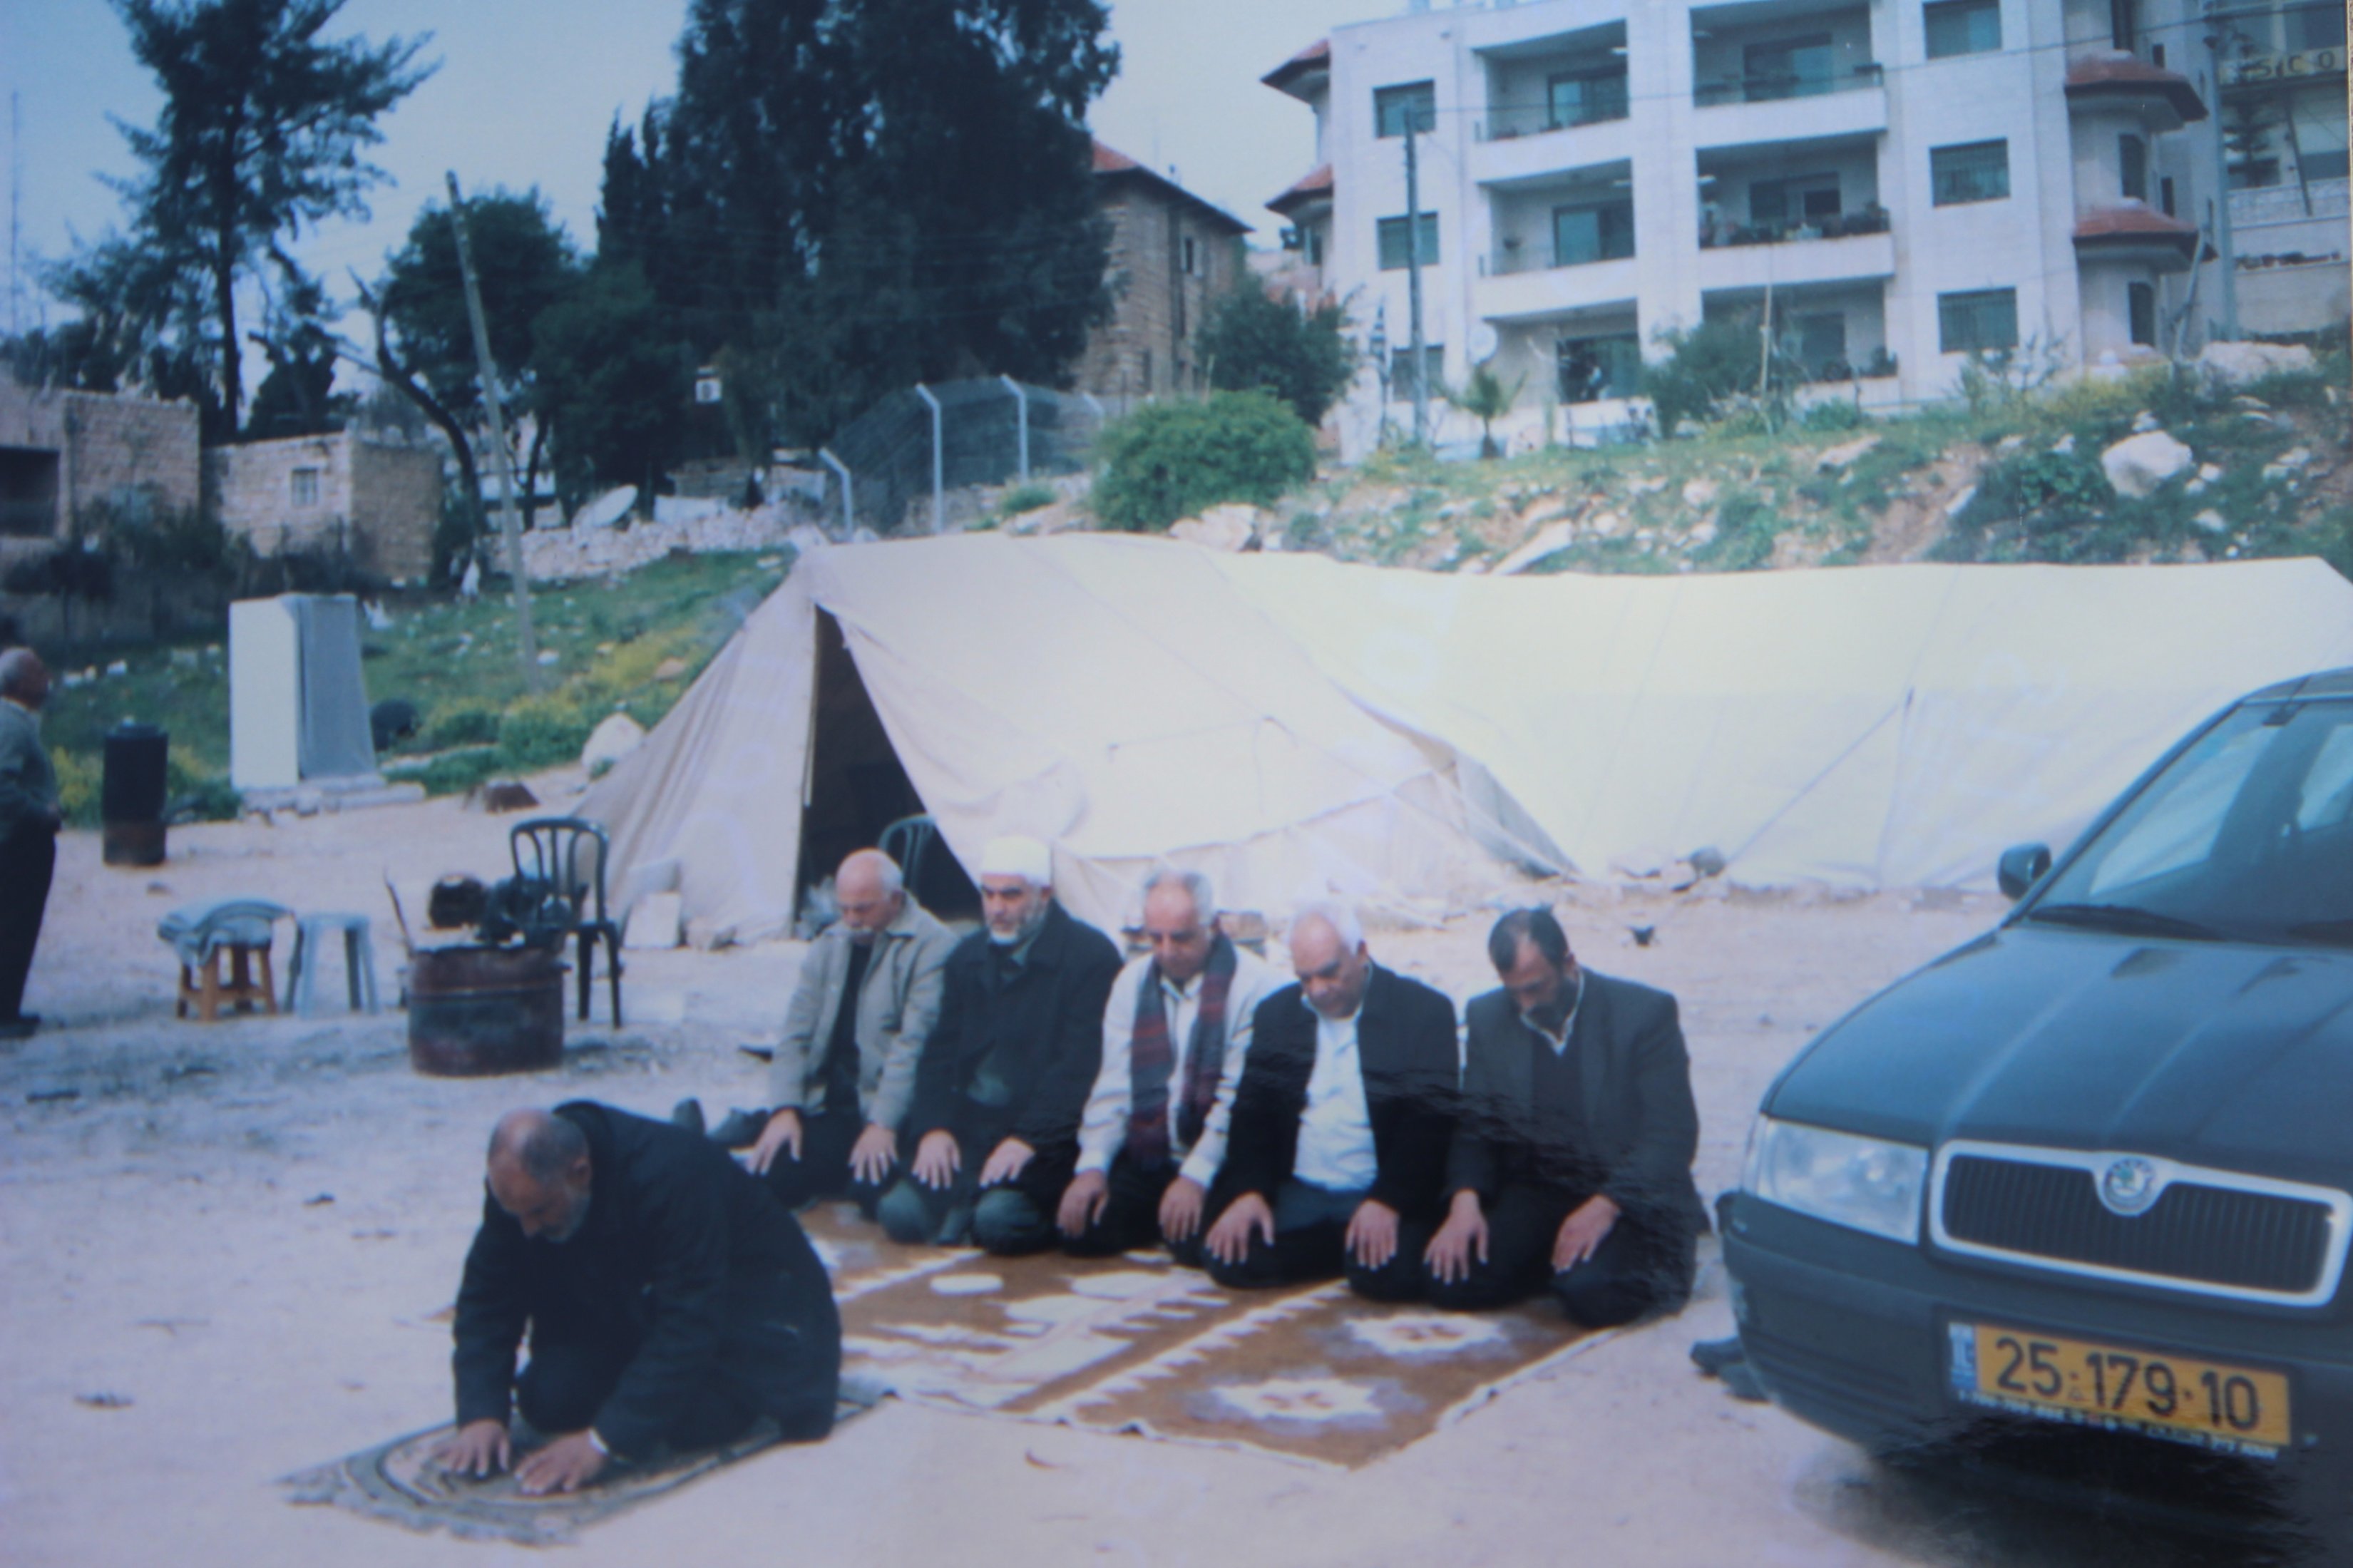 Une photo de 2008 montrant la tente dans laquelle vivait Fawziah al-Kurd après avoir été expulsée de sa maison de Sheikh Jarrah